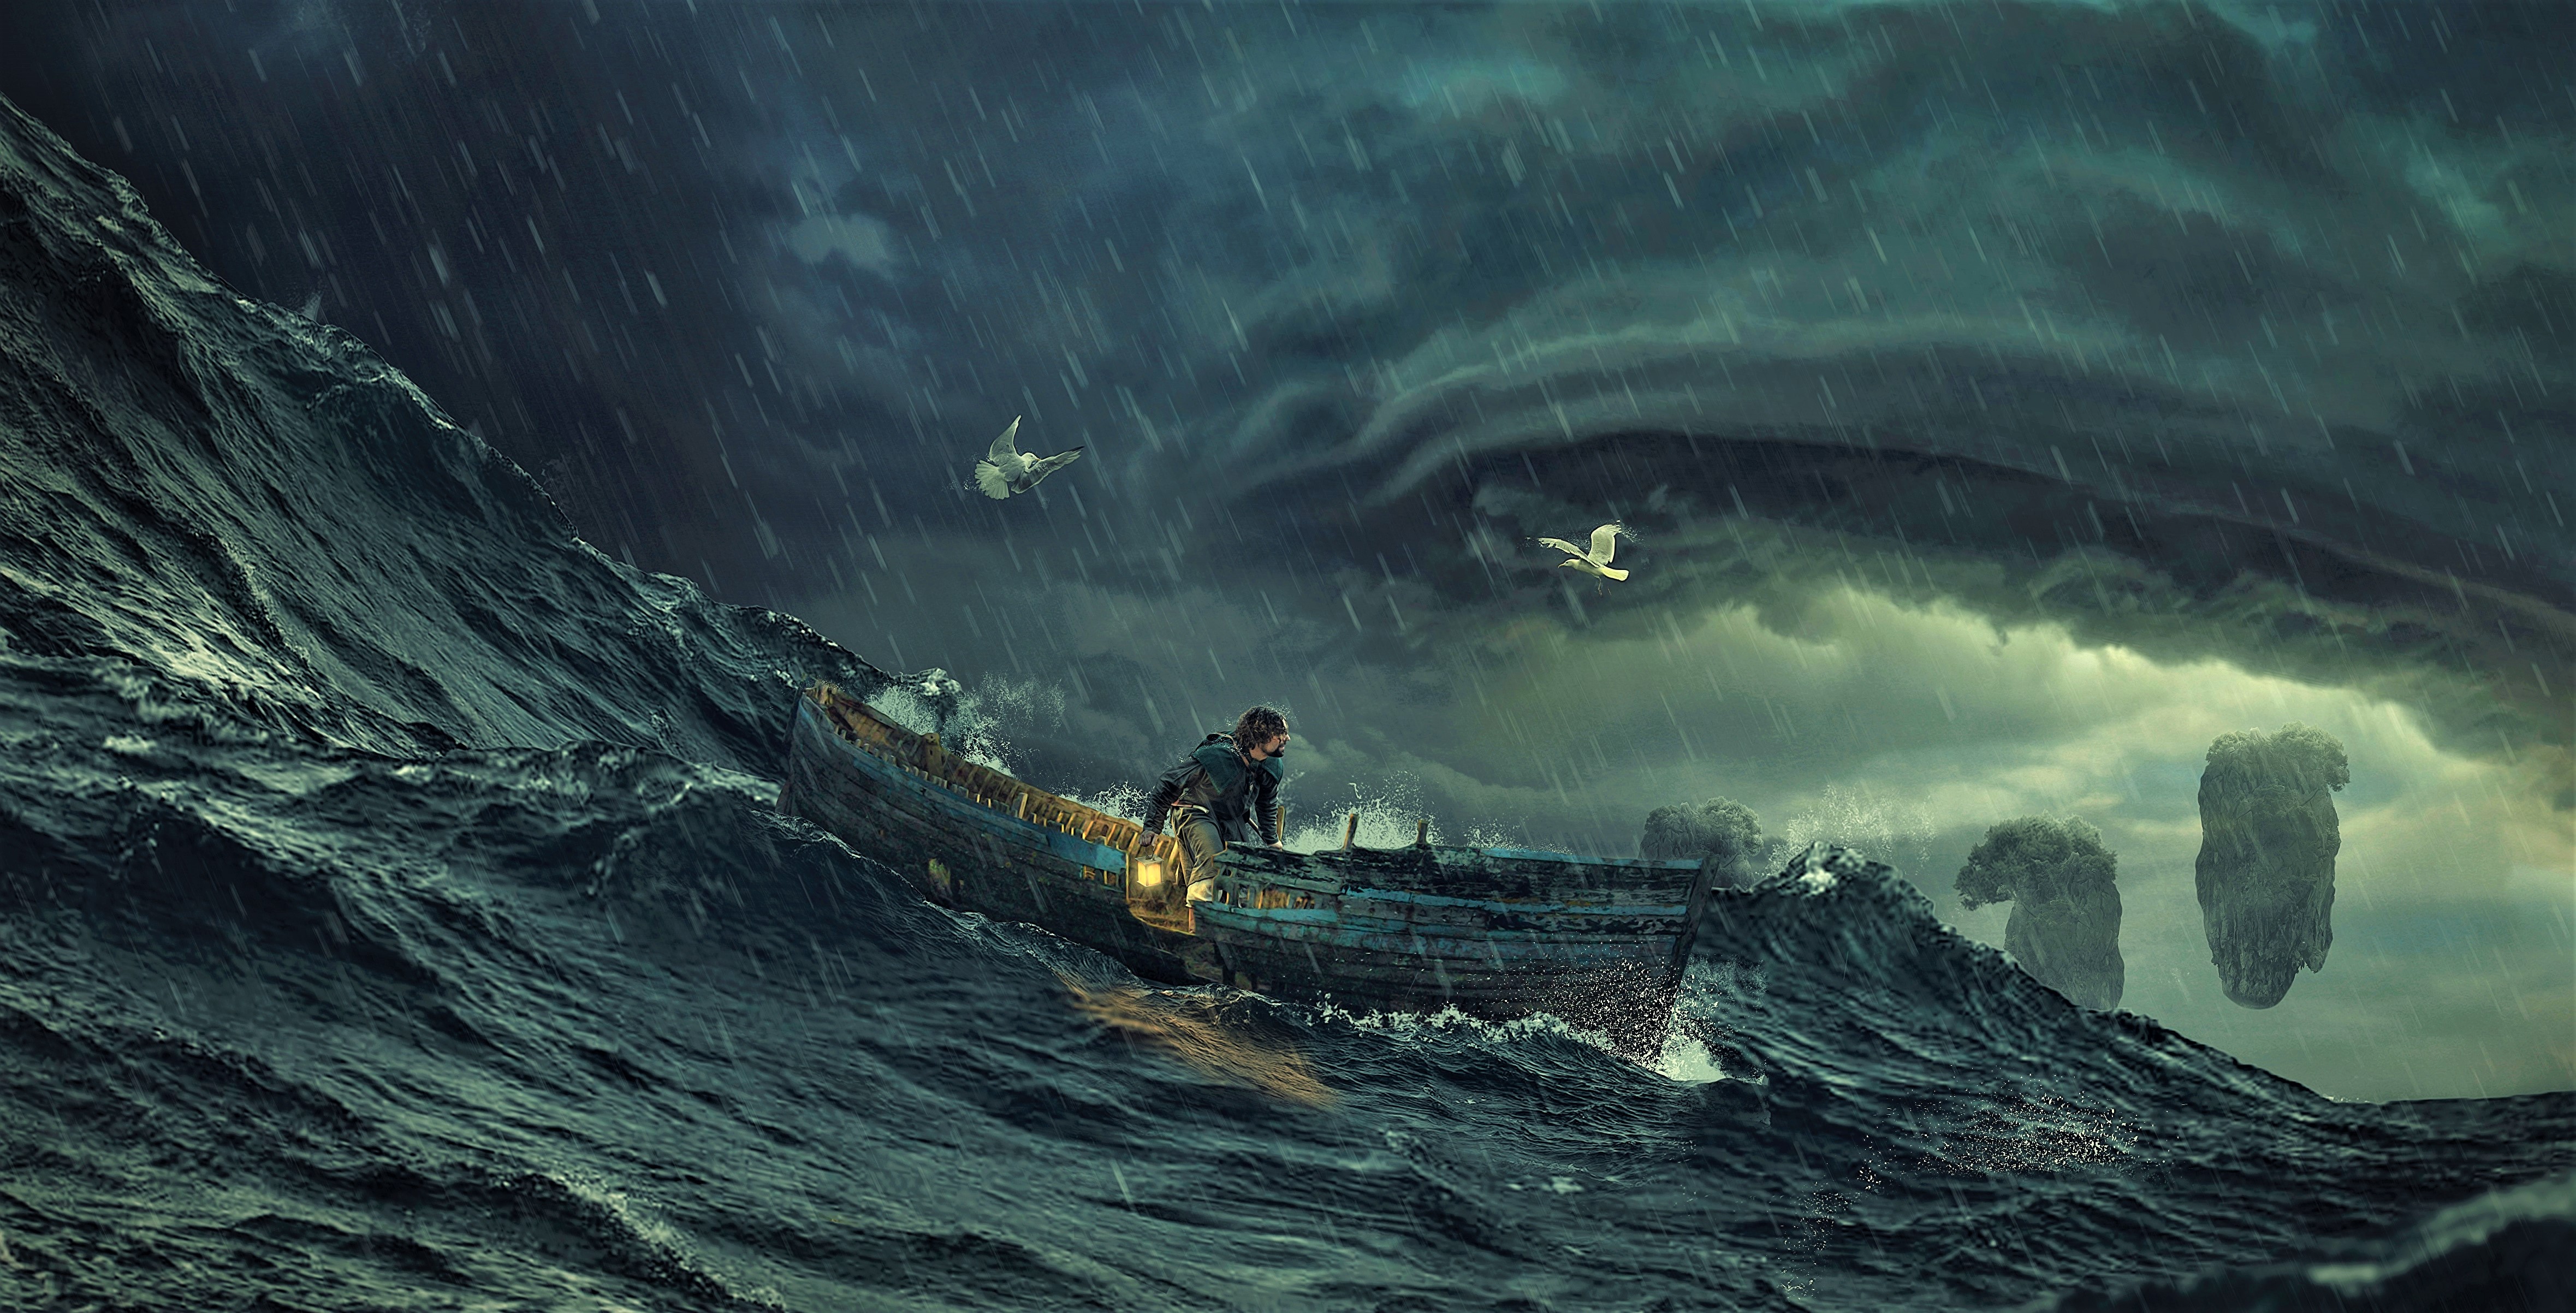 Boat Fantasy Man Ocean Sea Storm Wave 4718x2405